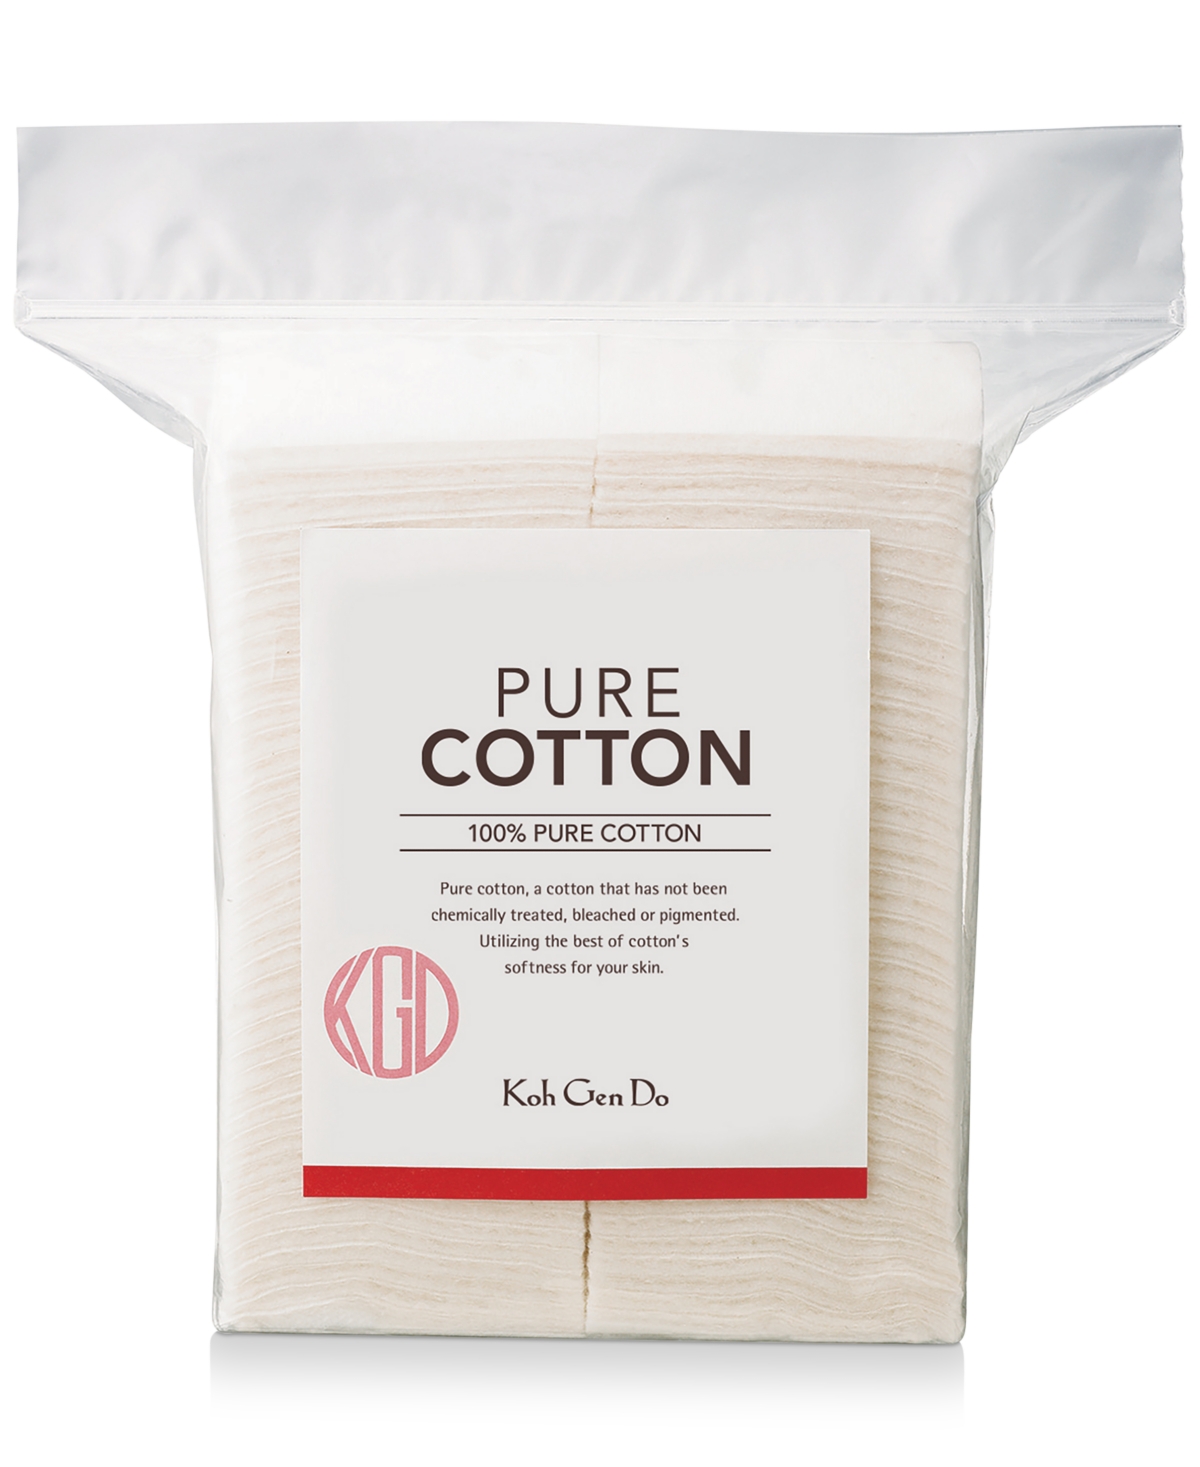 Koh Gen Do Pure Cotton, 80 pads